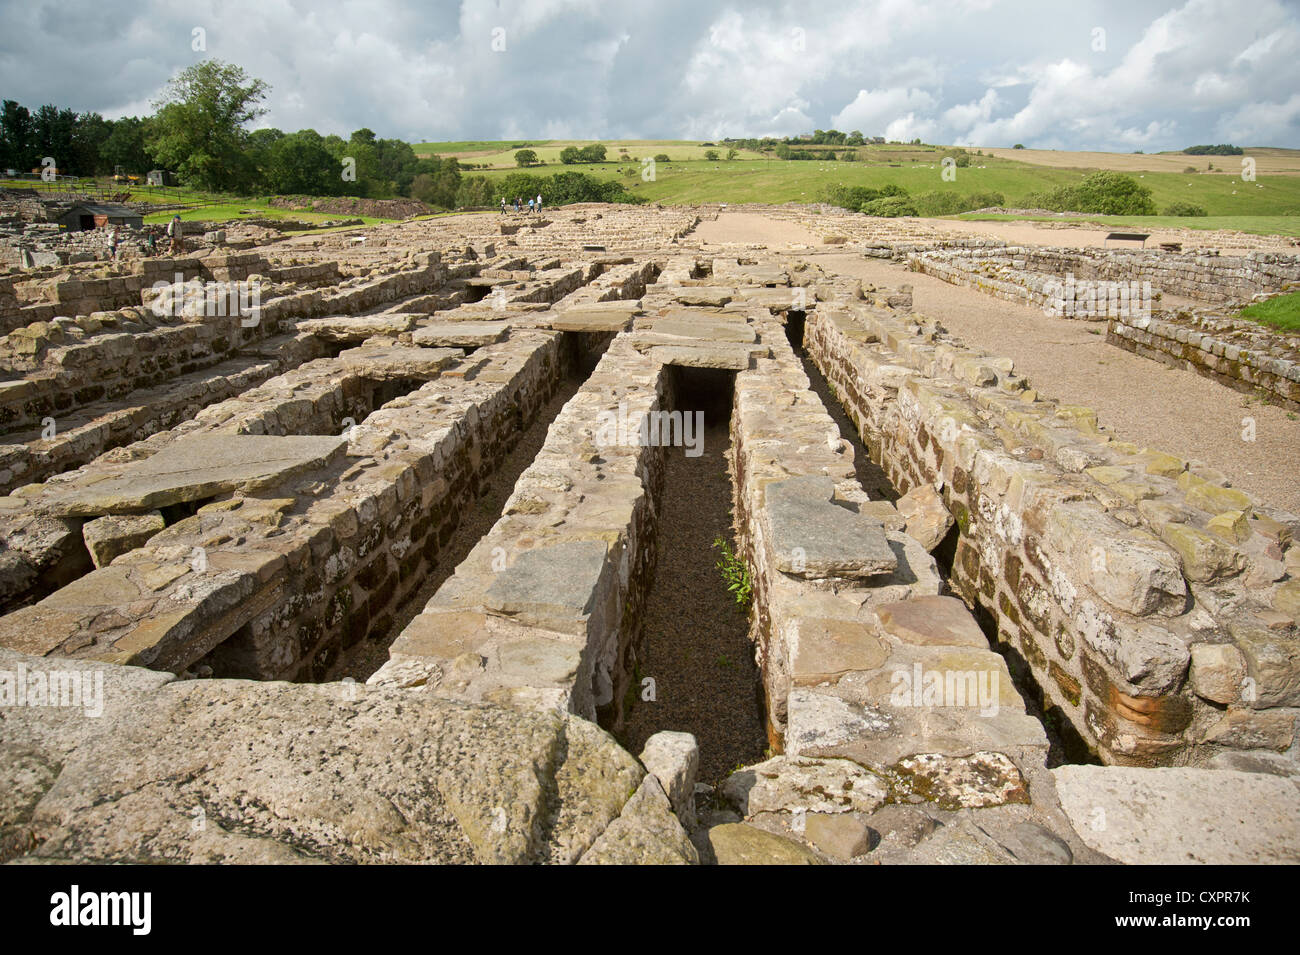 Una sección de la zona de tiendas y granero del sitio militar romano en Vindolanda, Housesteads, Northumberland. Ocs 8635. Foto de stock